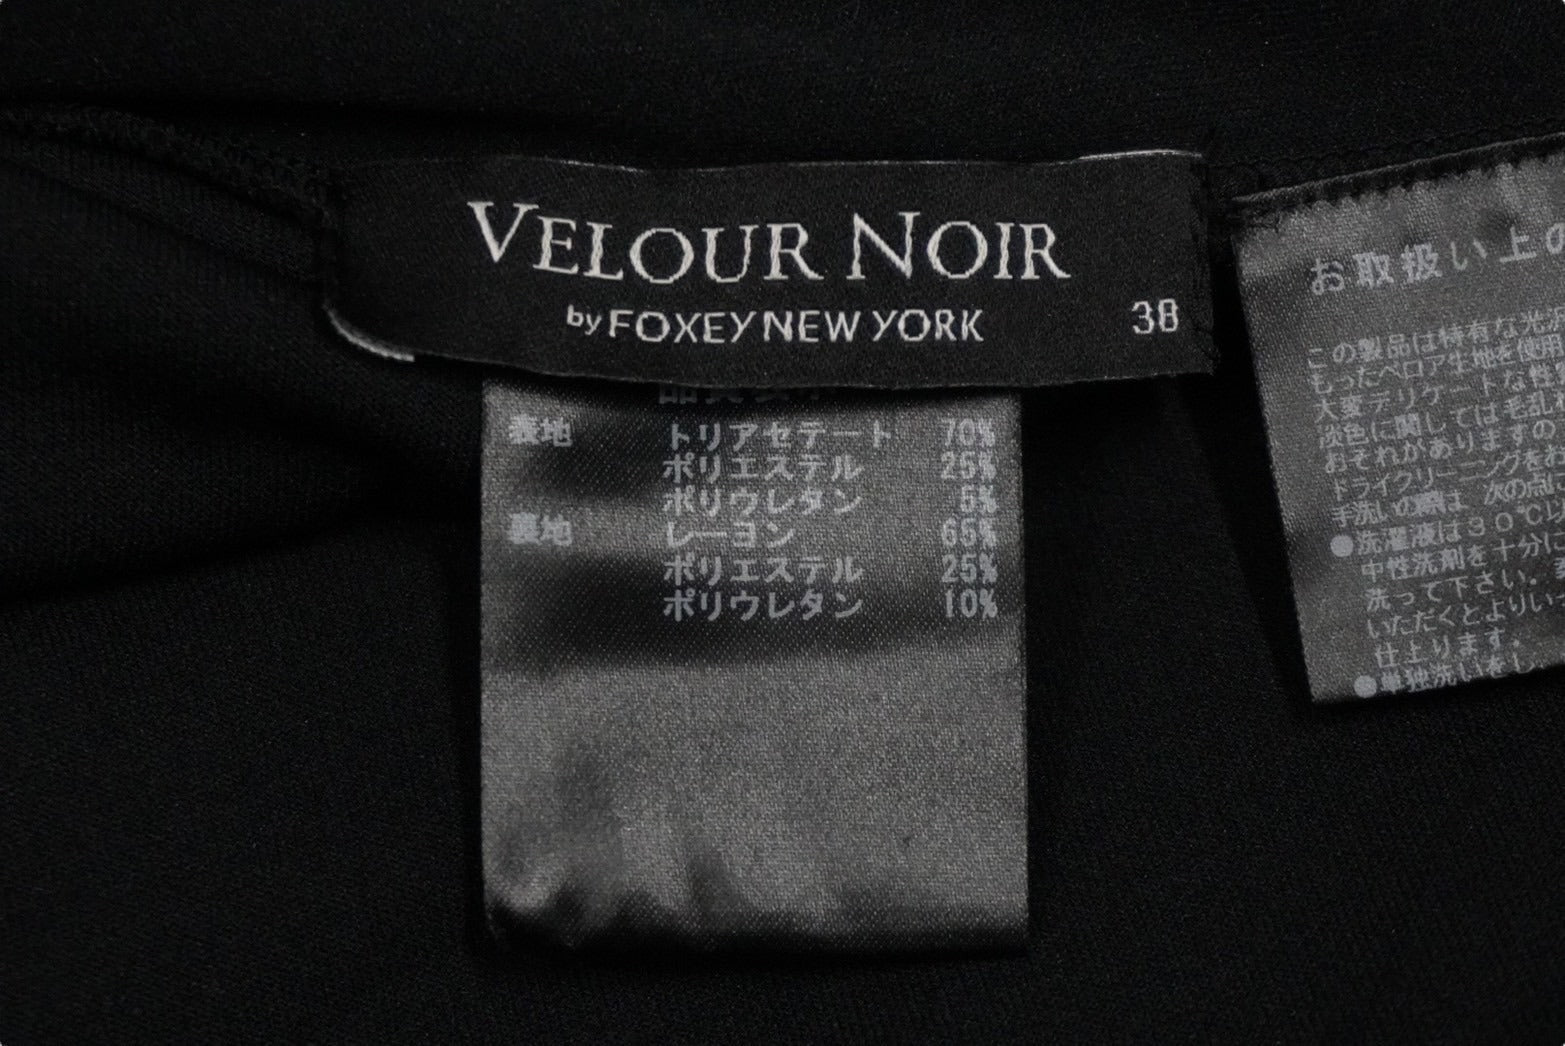 極美品 VELOUR NOIR by FOXEY NEW YORK フォクシー ニューヨーク 